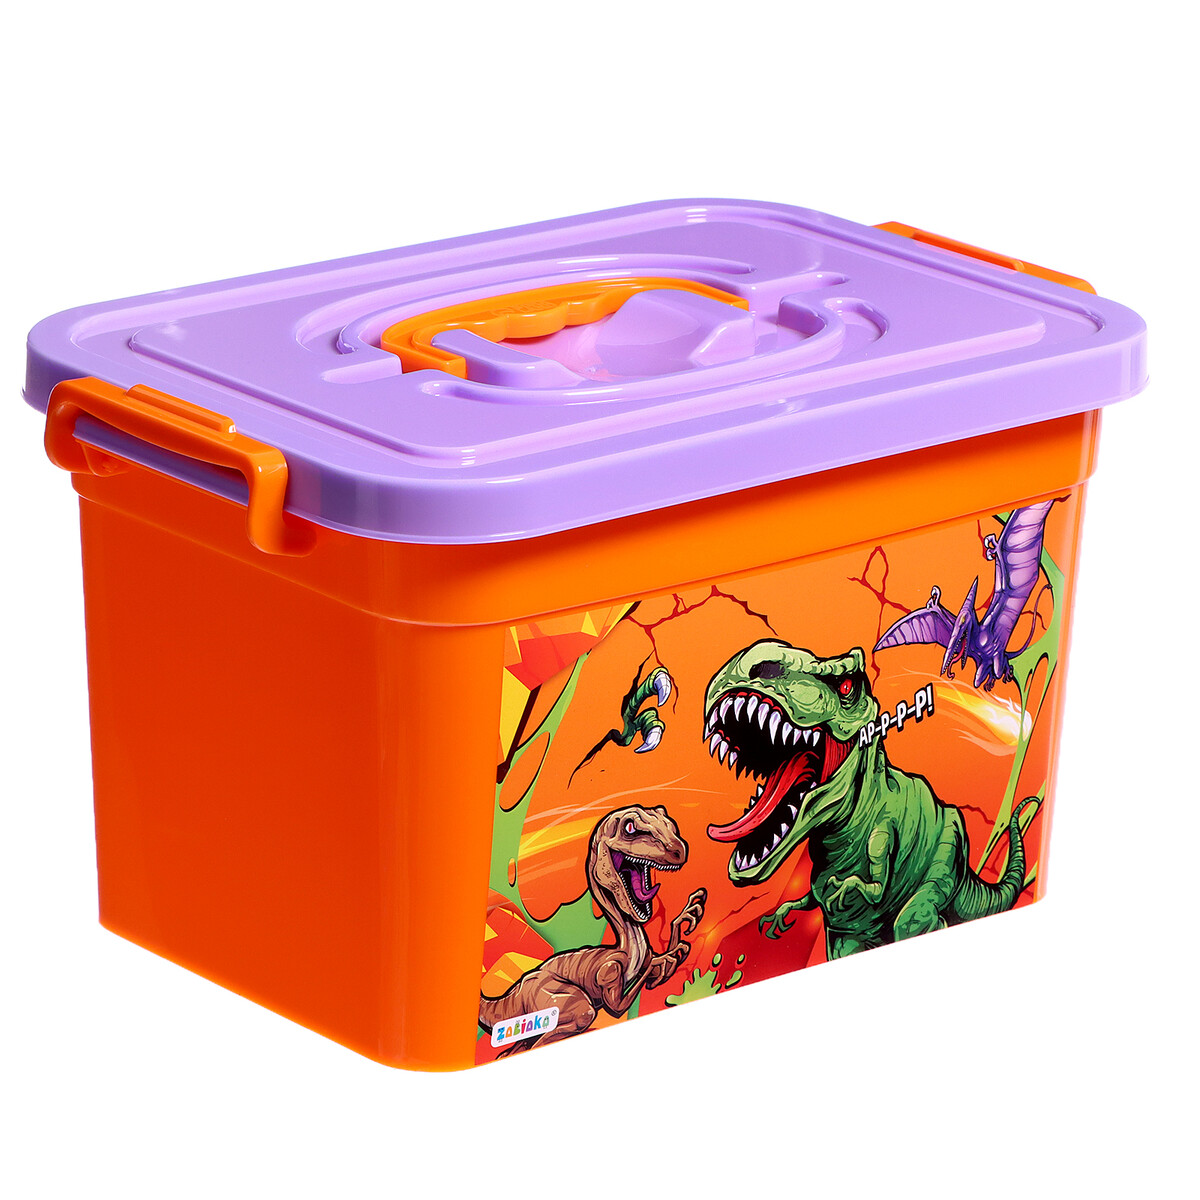 Ящик для хранения игрушек ящик для хранения игрушек froppi монстер тролль оранжевый в38 5см д49см ш35см 1шт